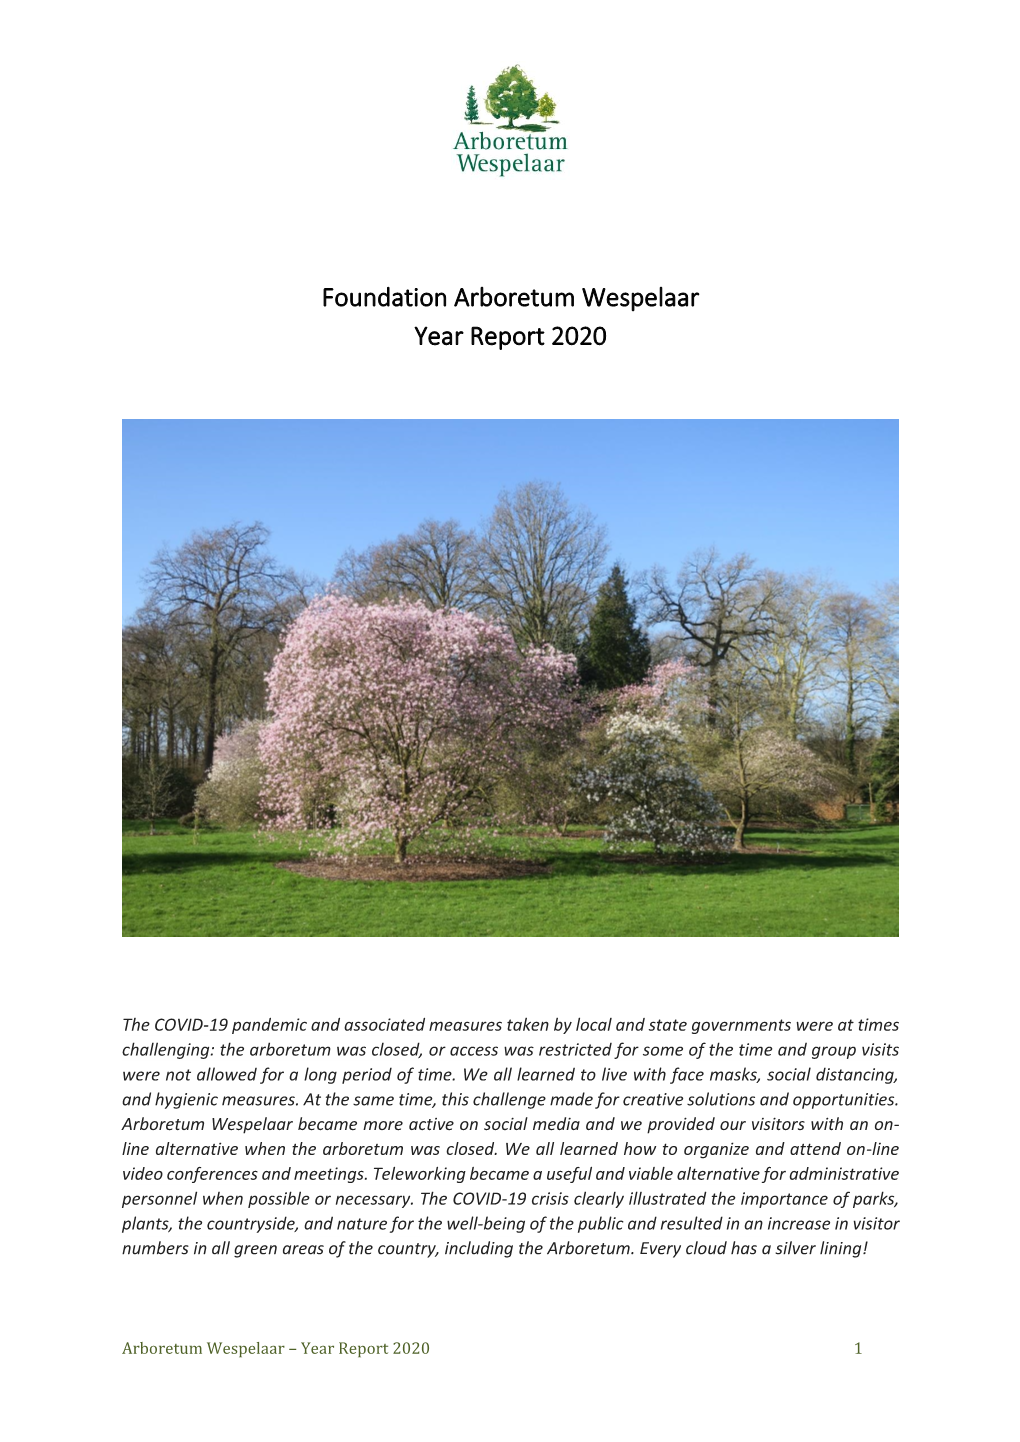 Foundation Arboretum Wespelaar Year Report 2020